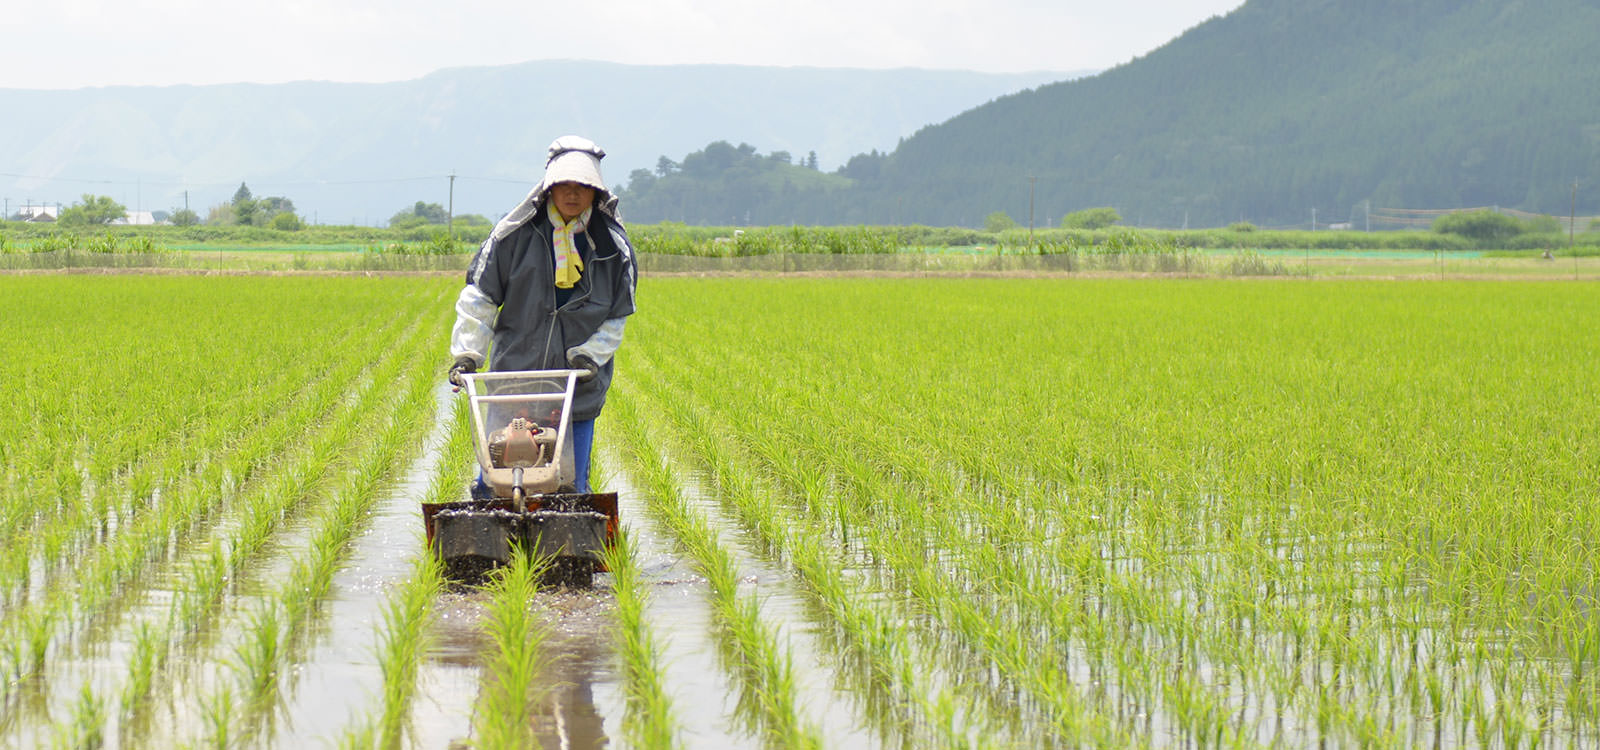 後藤明子さんが作る、アイガモ農法コシヒカリ。